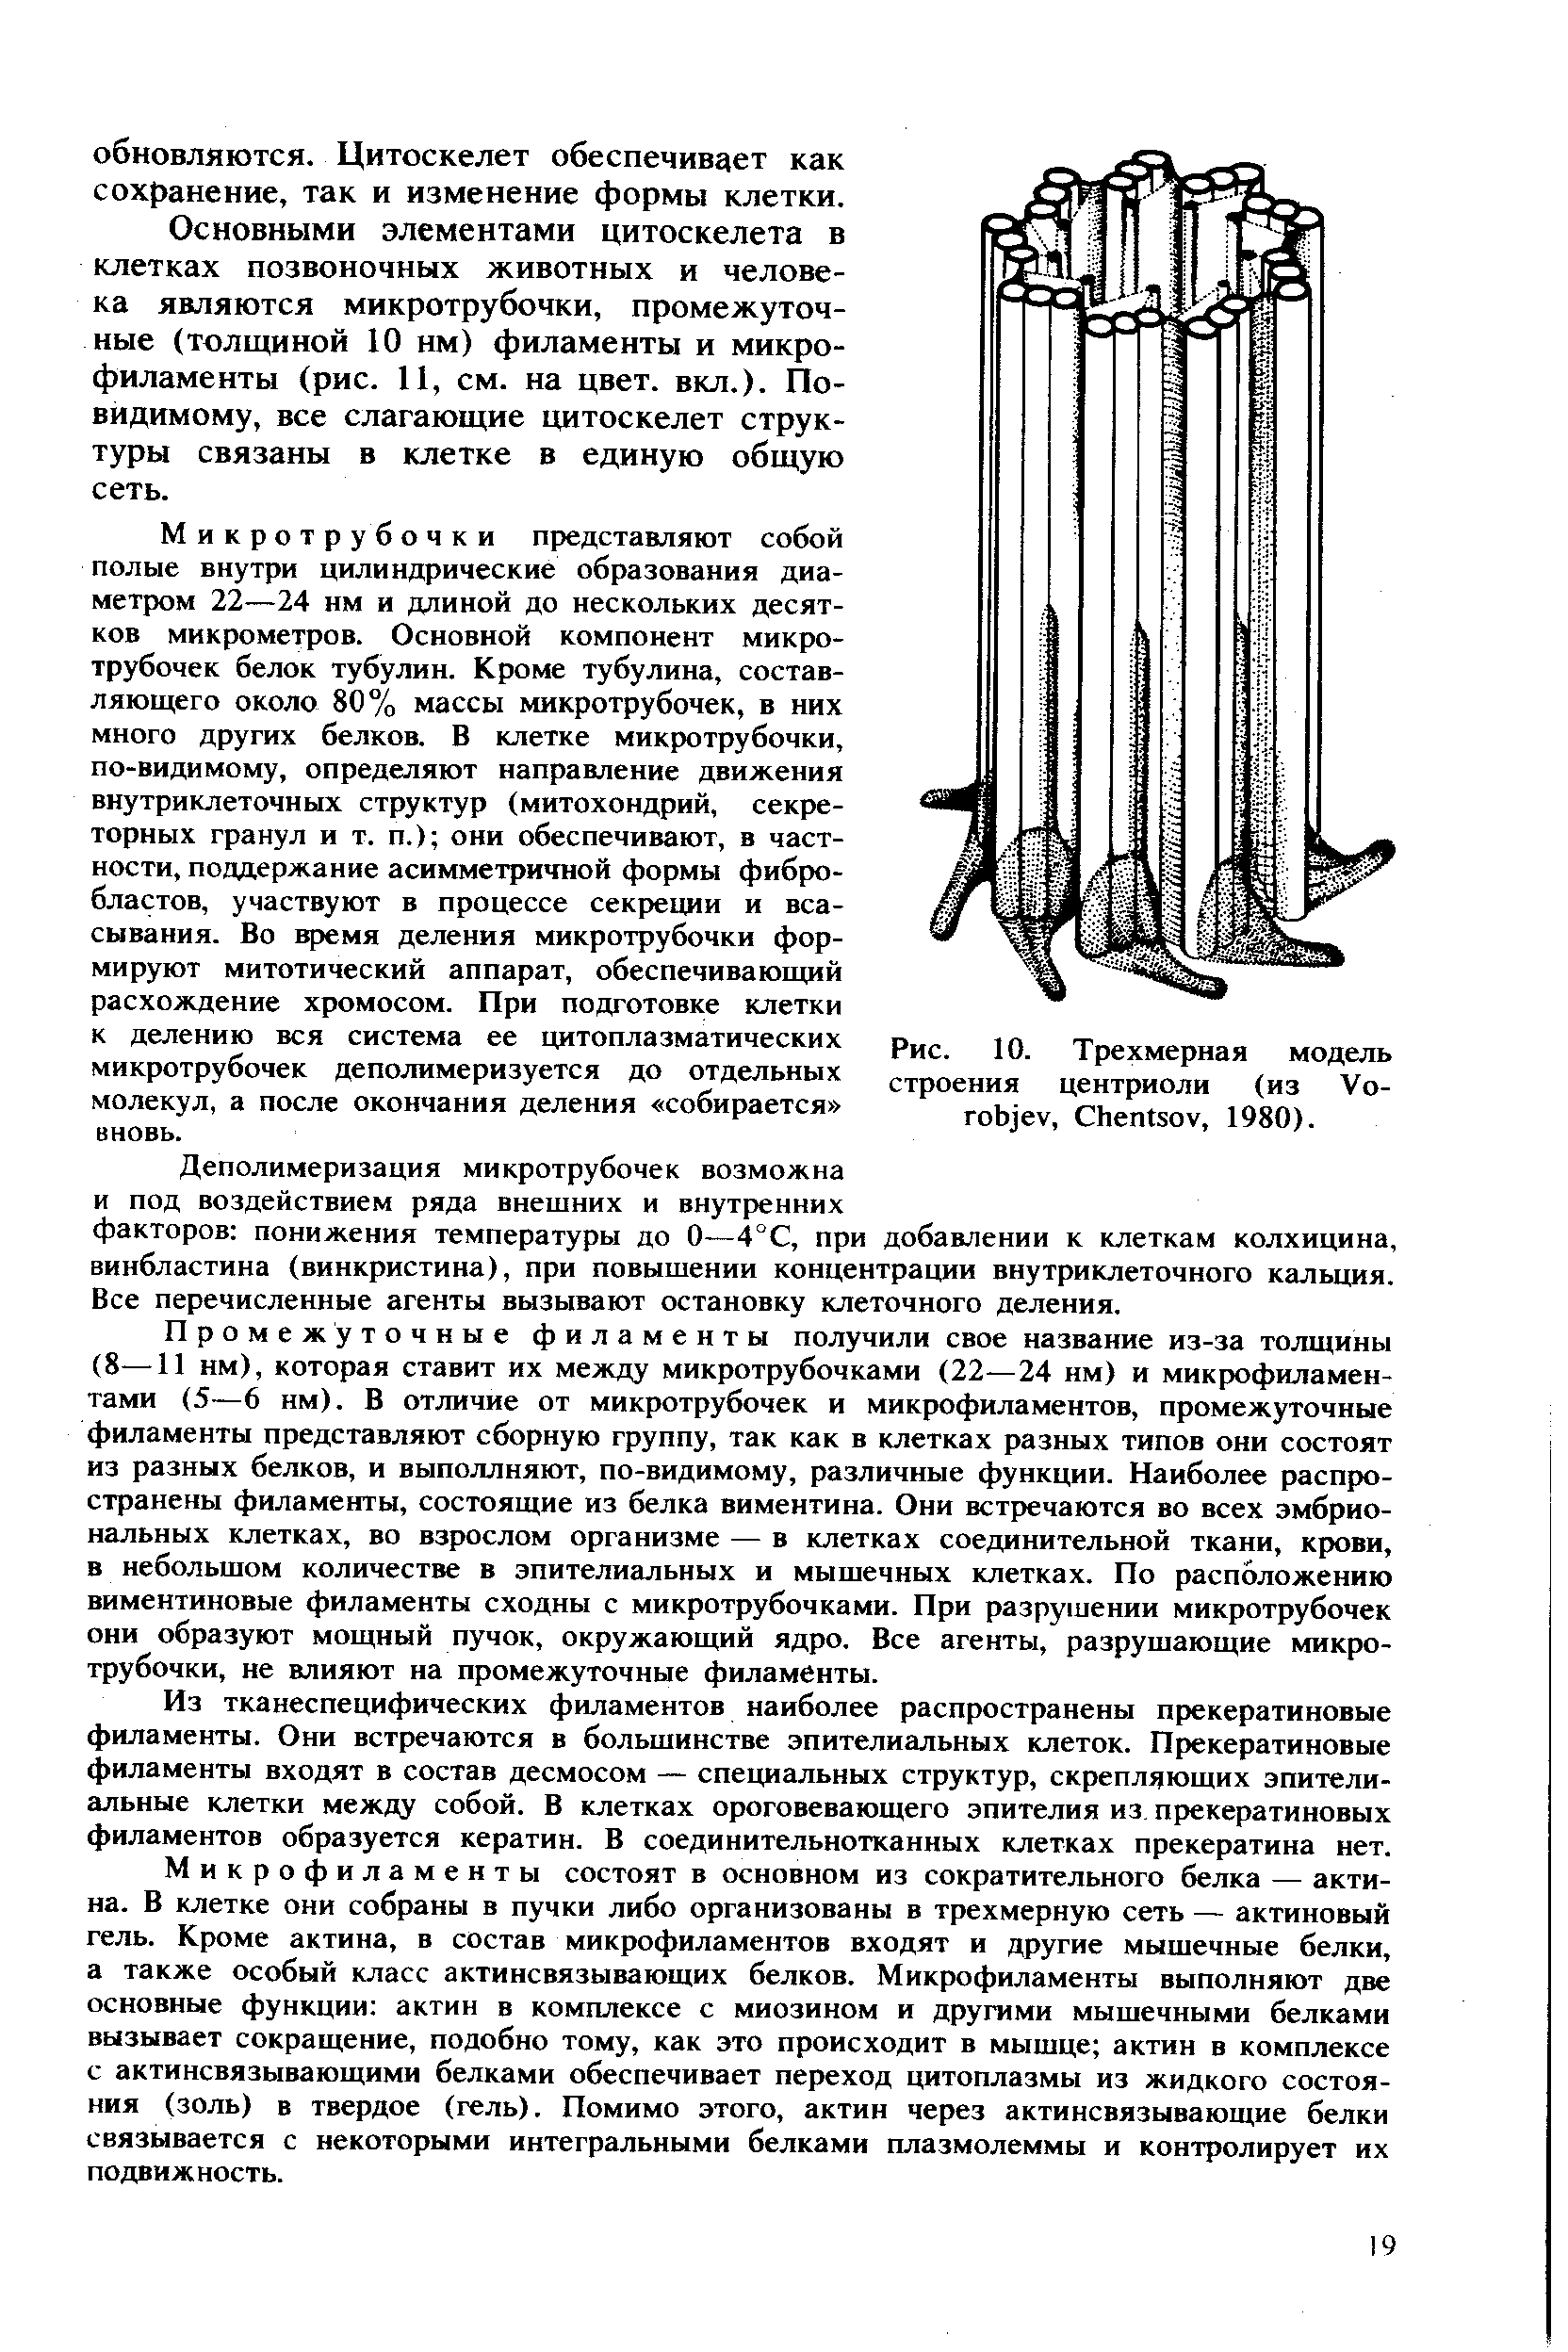 Рис. 10. Трехмерная модель строения центриоли (из V - , C , 1980).